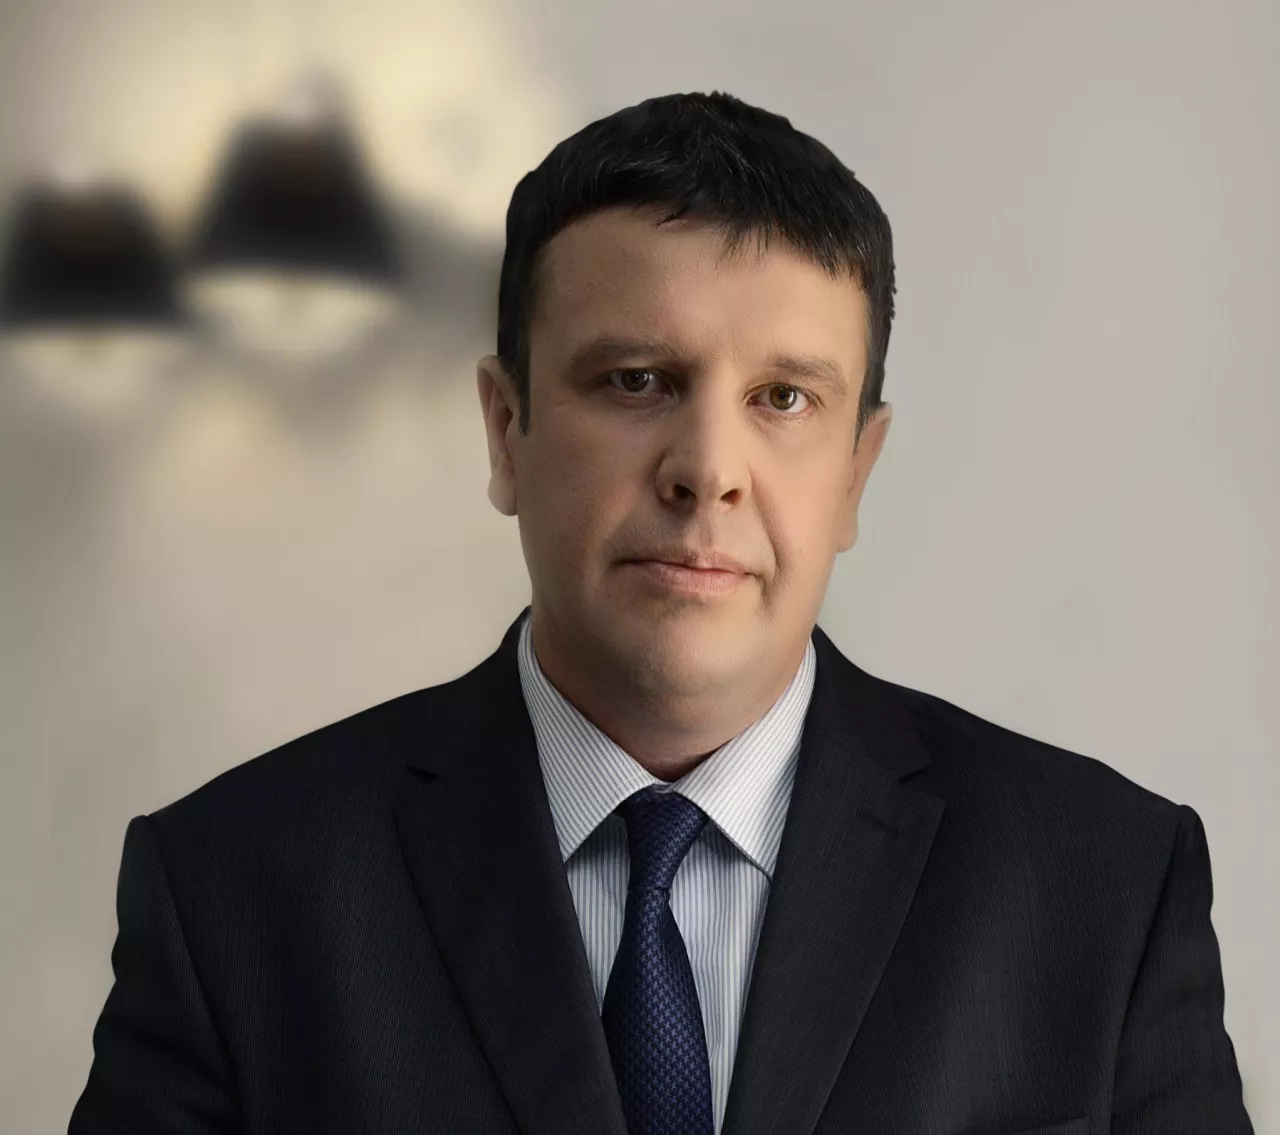 Piotr Suchocki, członek zarządu Polskiej Grupy Supermarketów (PGS)